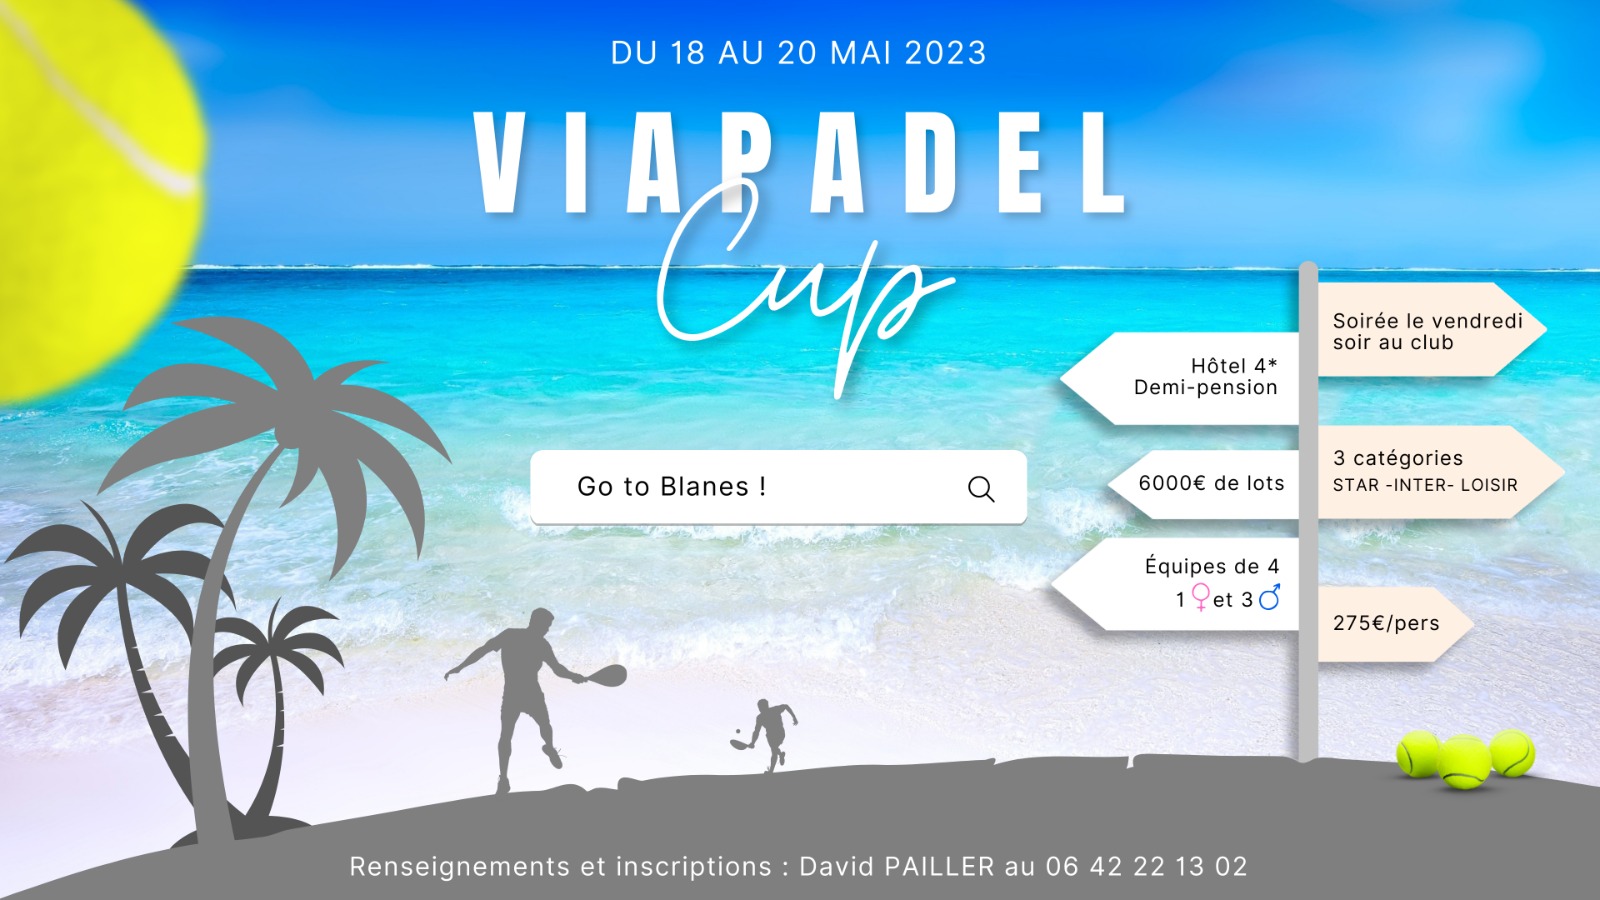 Via Padel Cup 2023 : on repart pour un tour ?